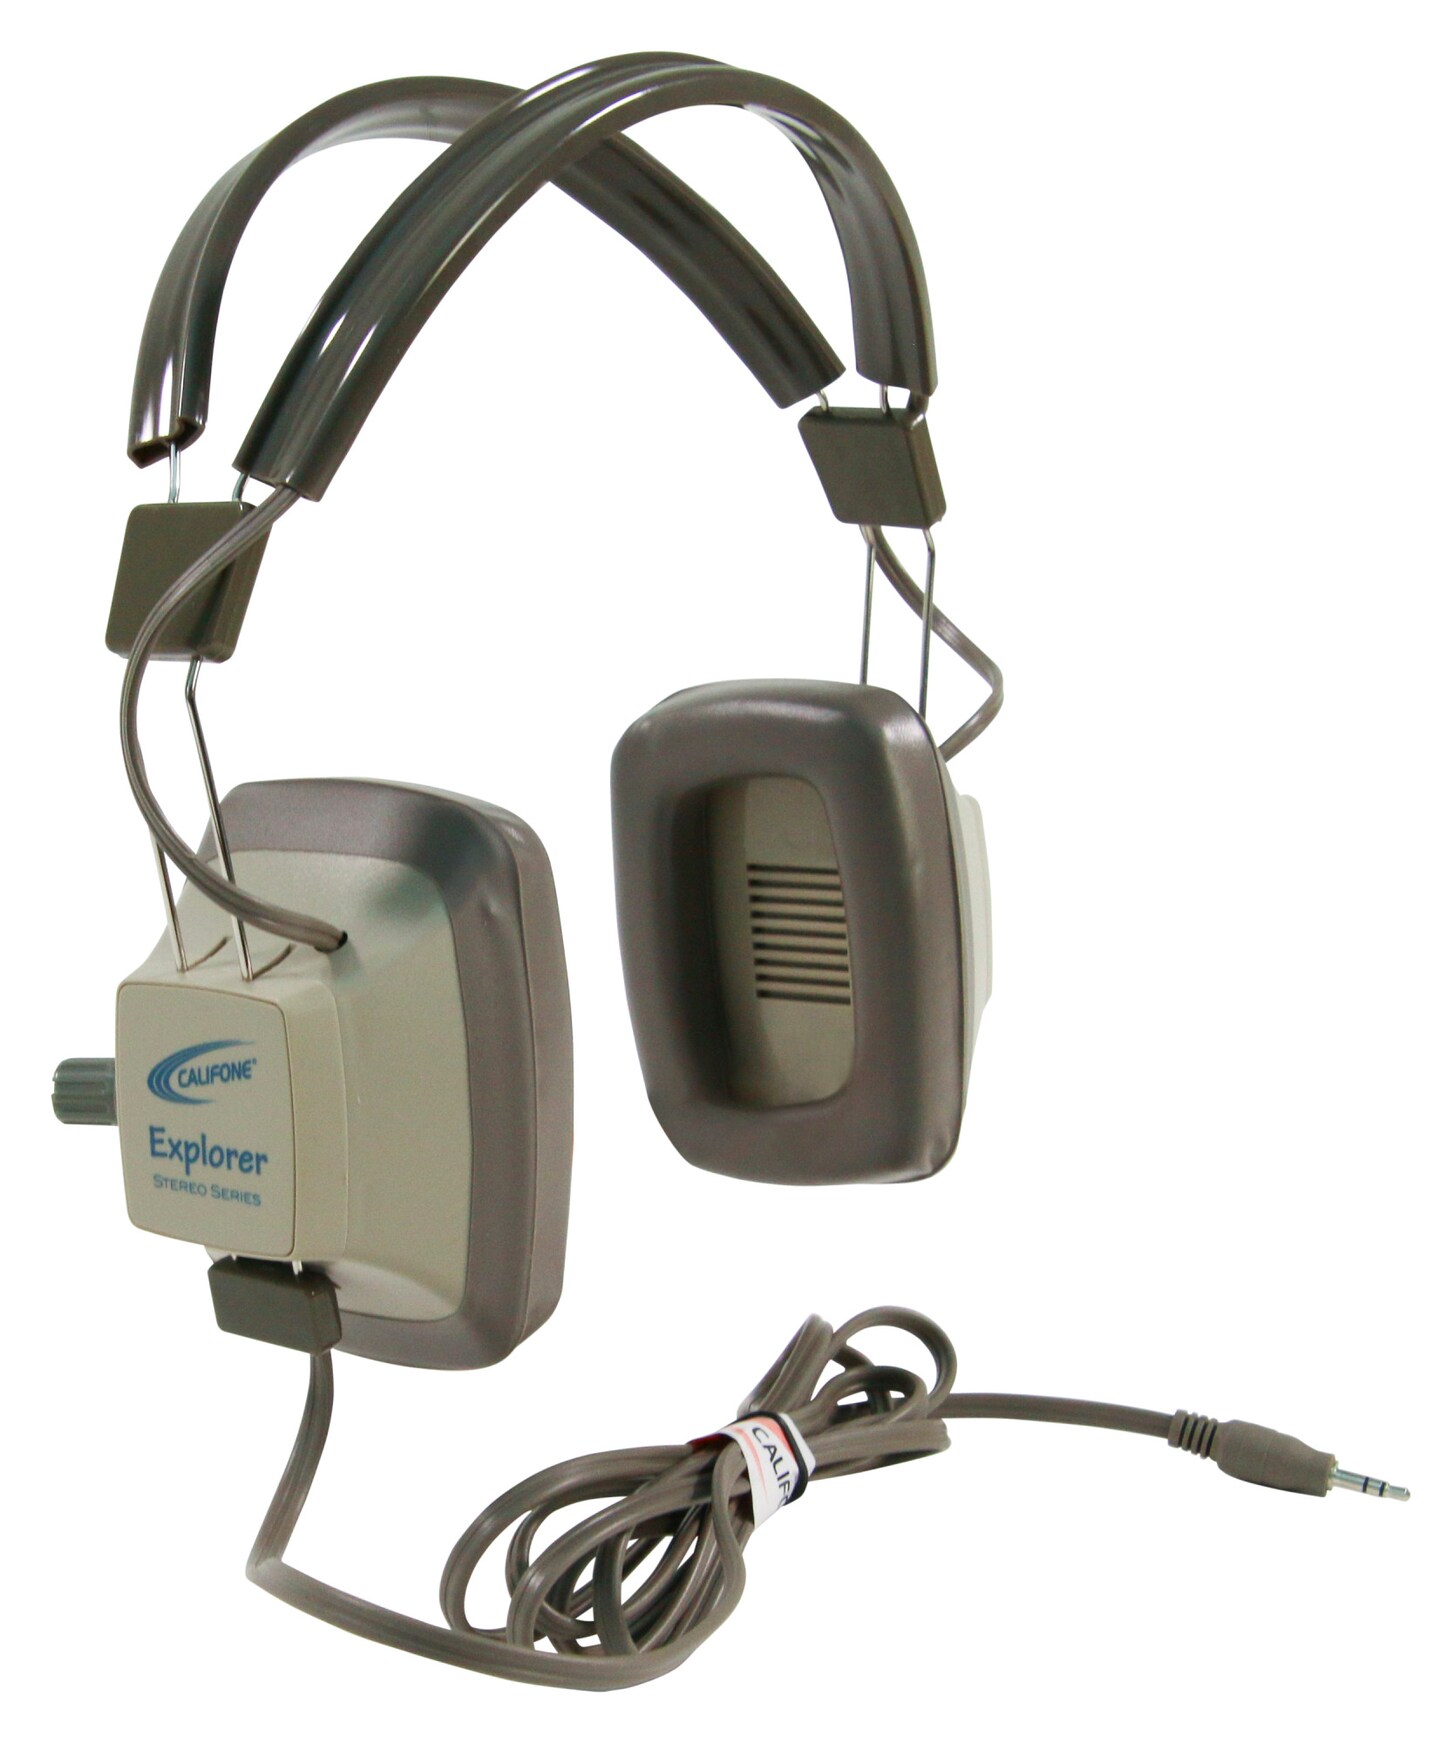 Califone EH-3SV Explorer Binaural Headphones, Light Grey/Beige